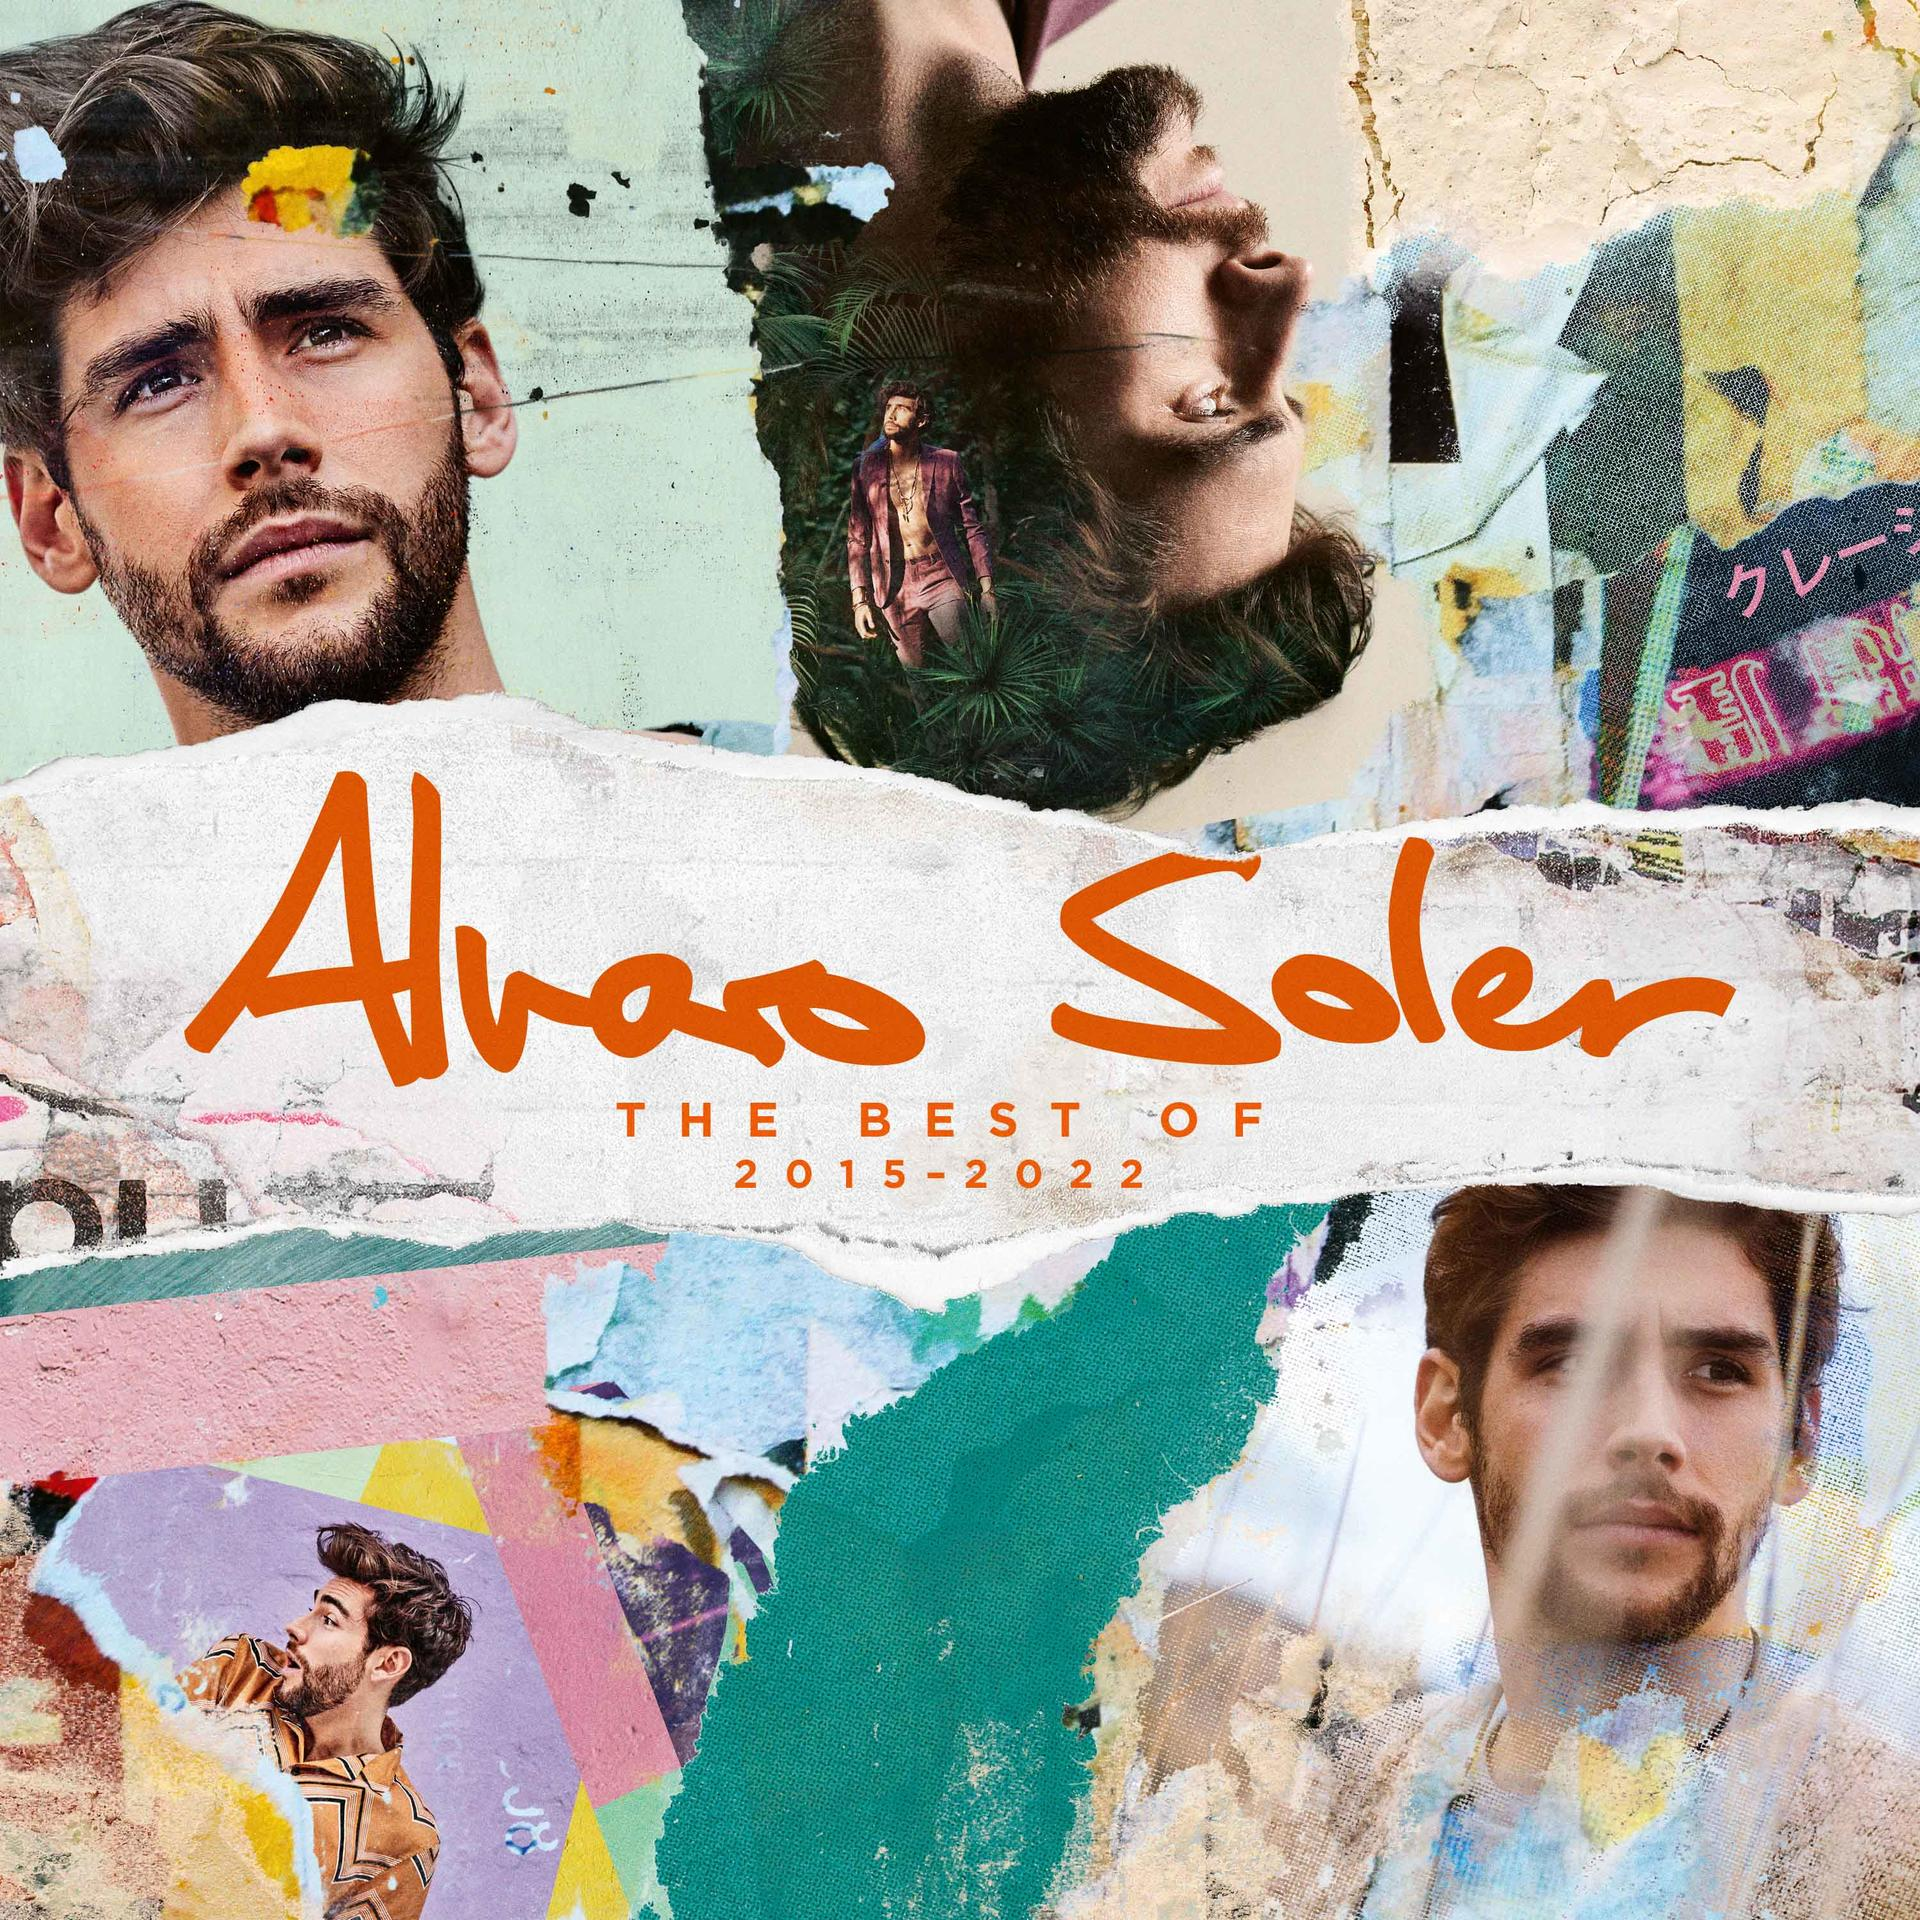 - (CD) Soler The Alvaro Best - 2015-2022 Of